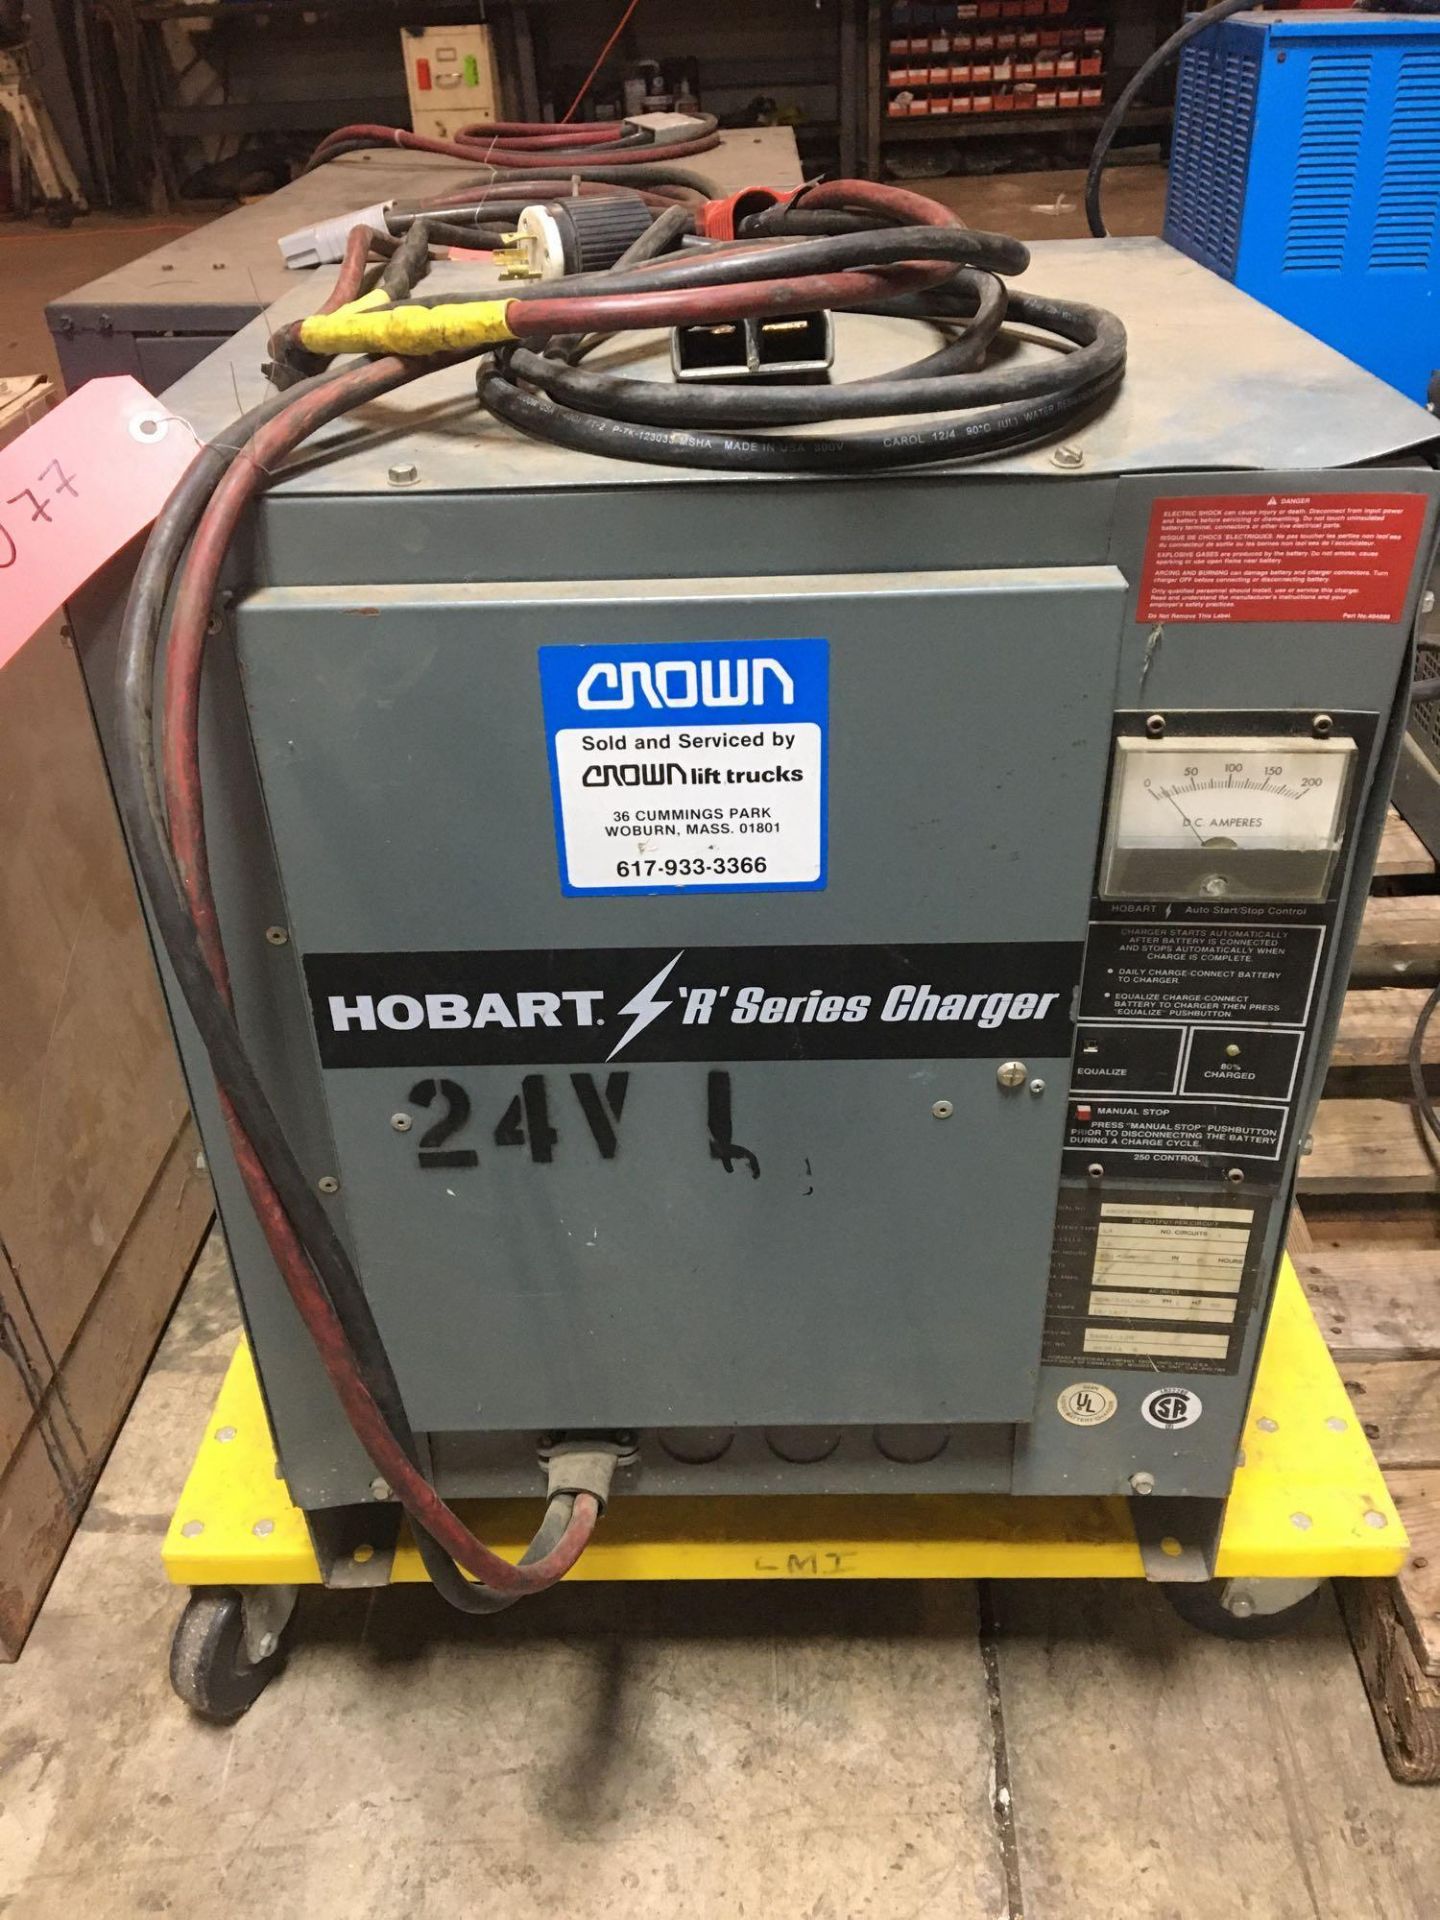 Hobart 24V Battery Charger, Model 540B1-12R